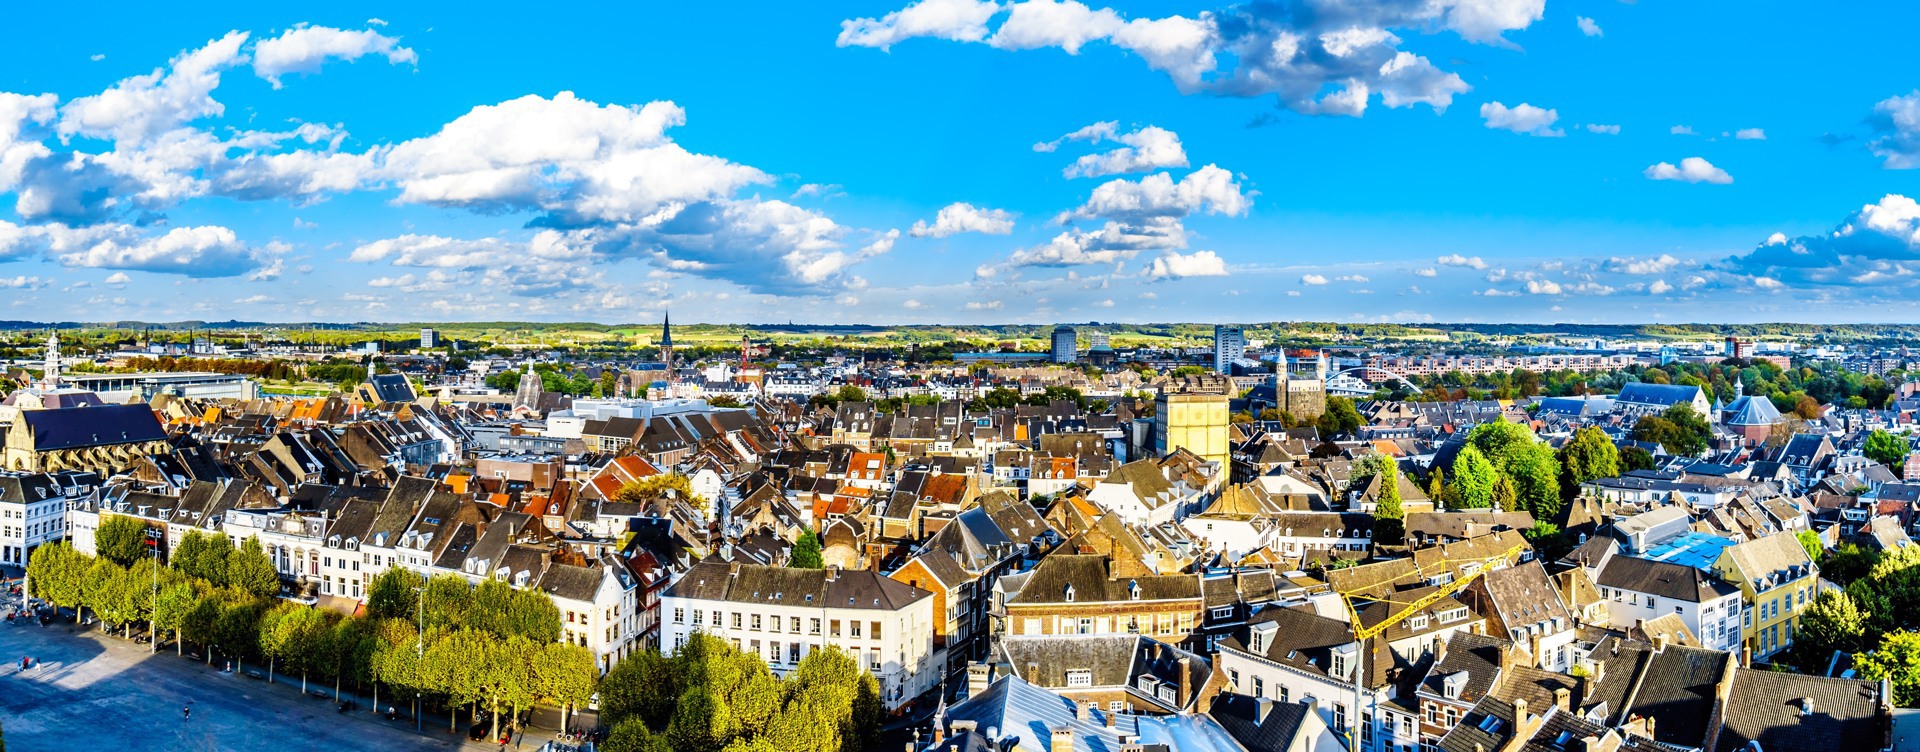 Bezoek het historische stadscentrum
van Maastricht